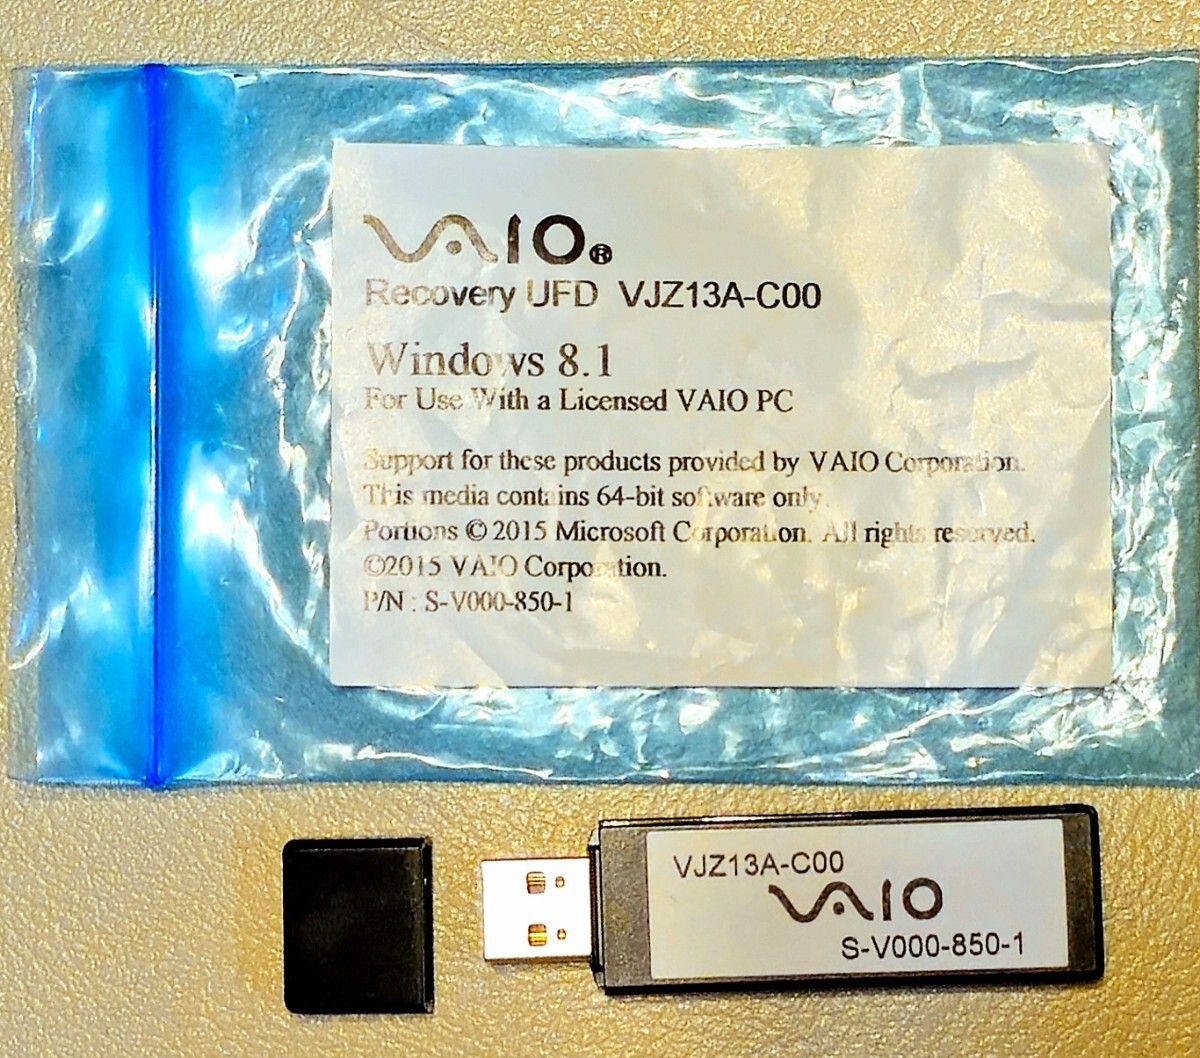 [ прекрасный товар ] Vaio фирма VAIO-Z USB восстановление - носитель информации (VJZ13A-C00) | новый товар. справочная цена : примерно 7,000 иен ( включая налог )